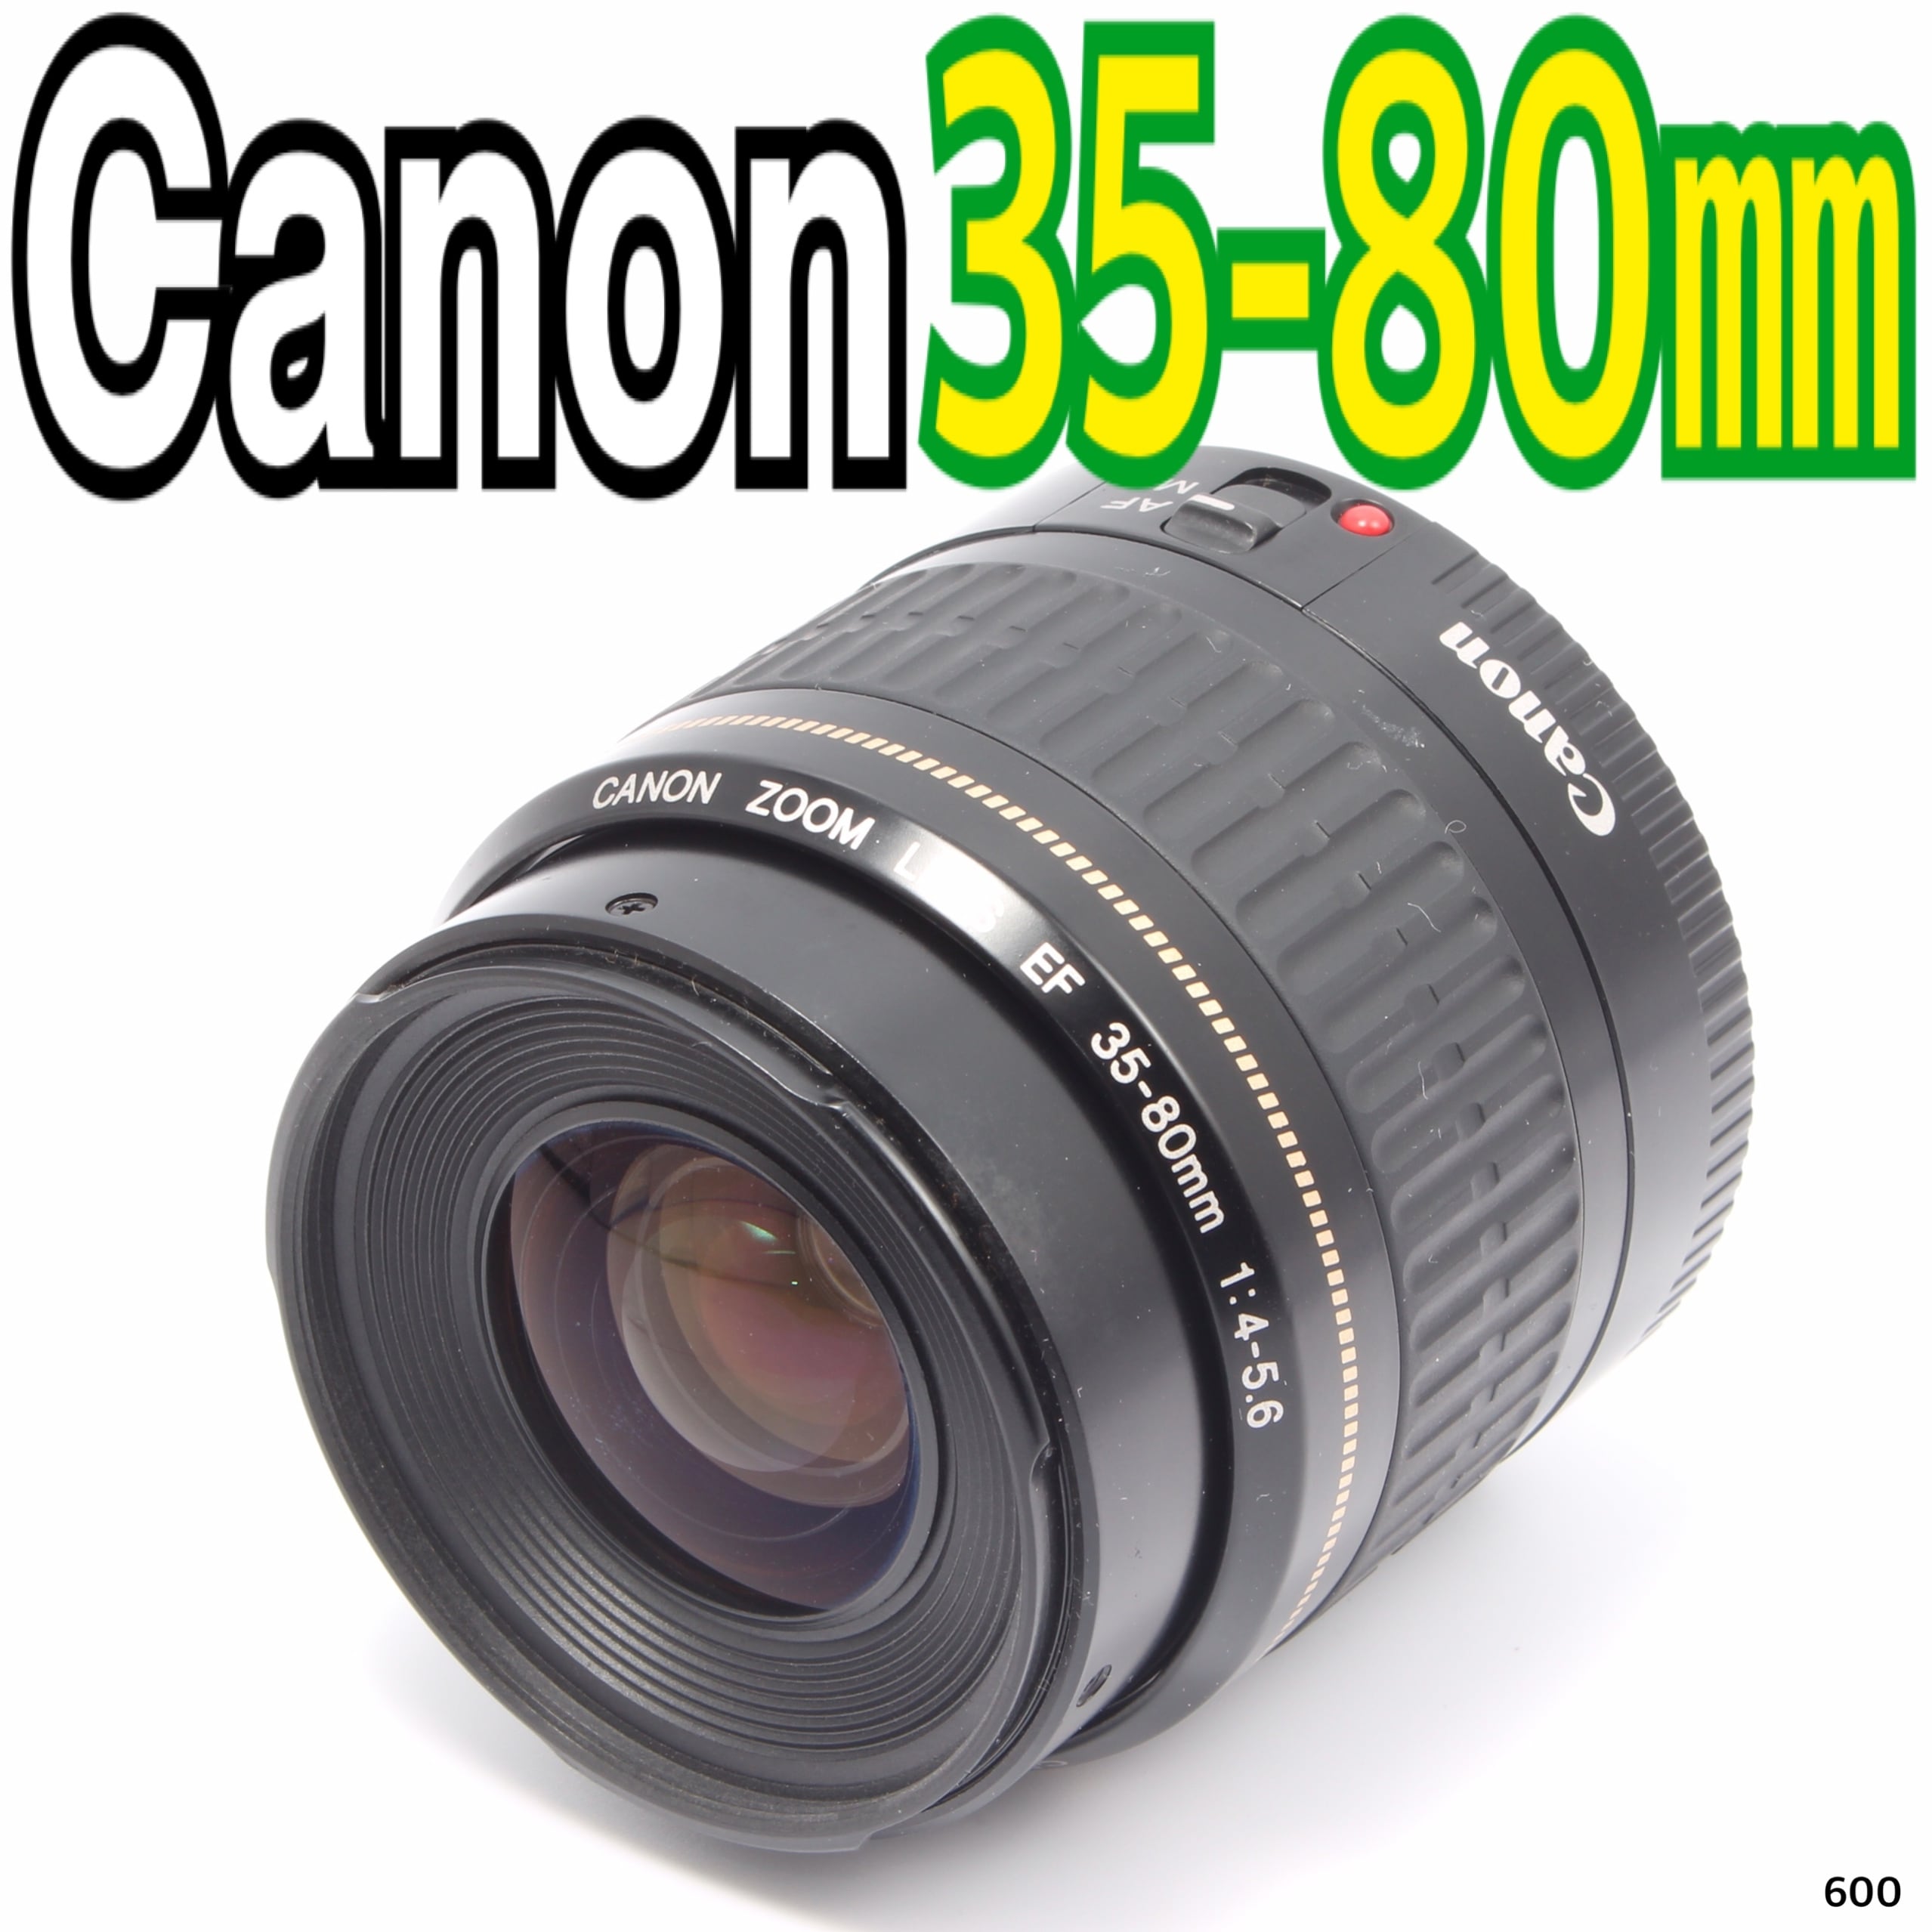 キヤノン Canon EF 35-80mm F4-5.6